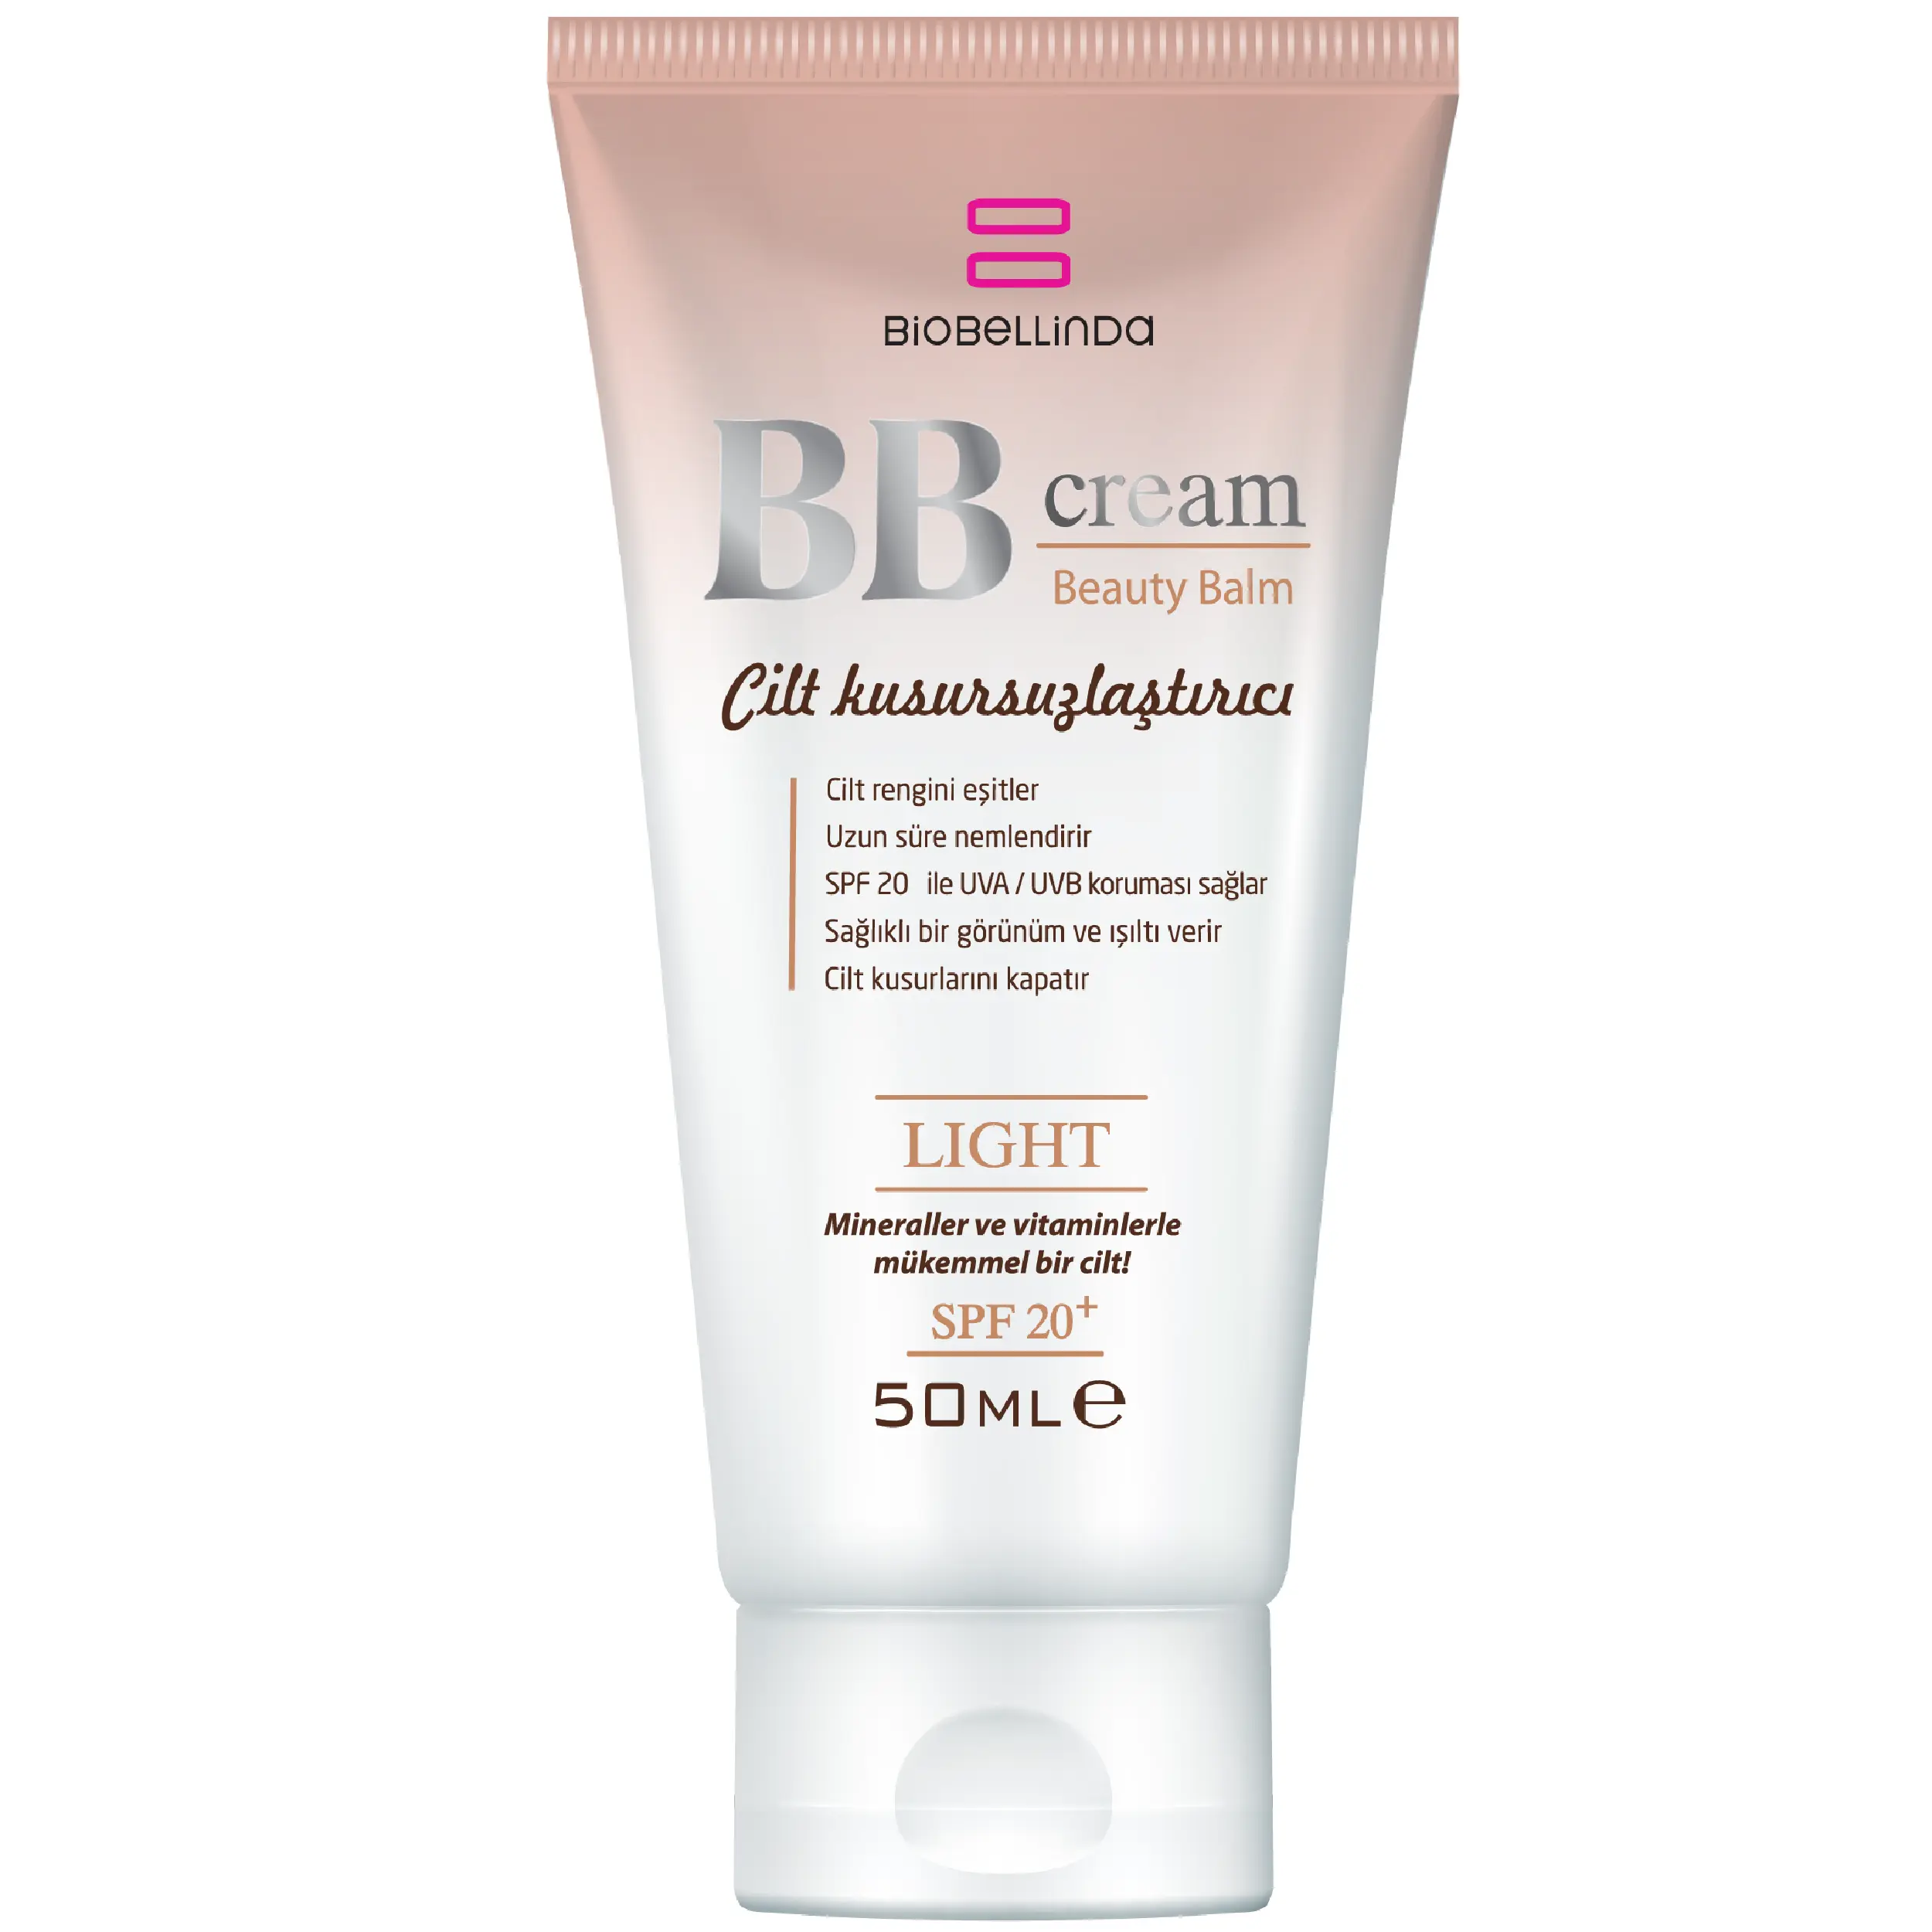 Biobellinda Bb Cream Light 50 Ml | Cilt Kusursuzlaştırıcı Kapatıcı